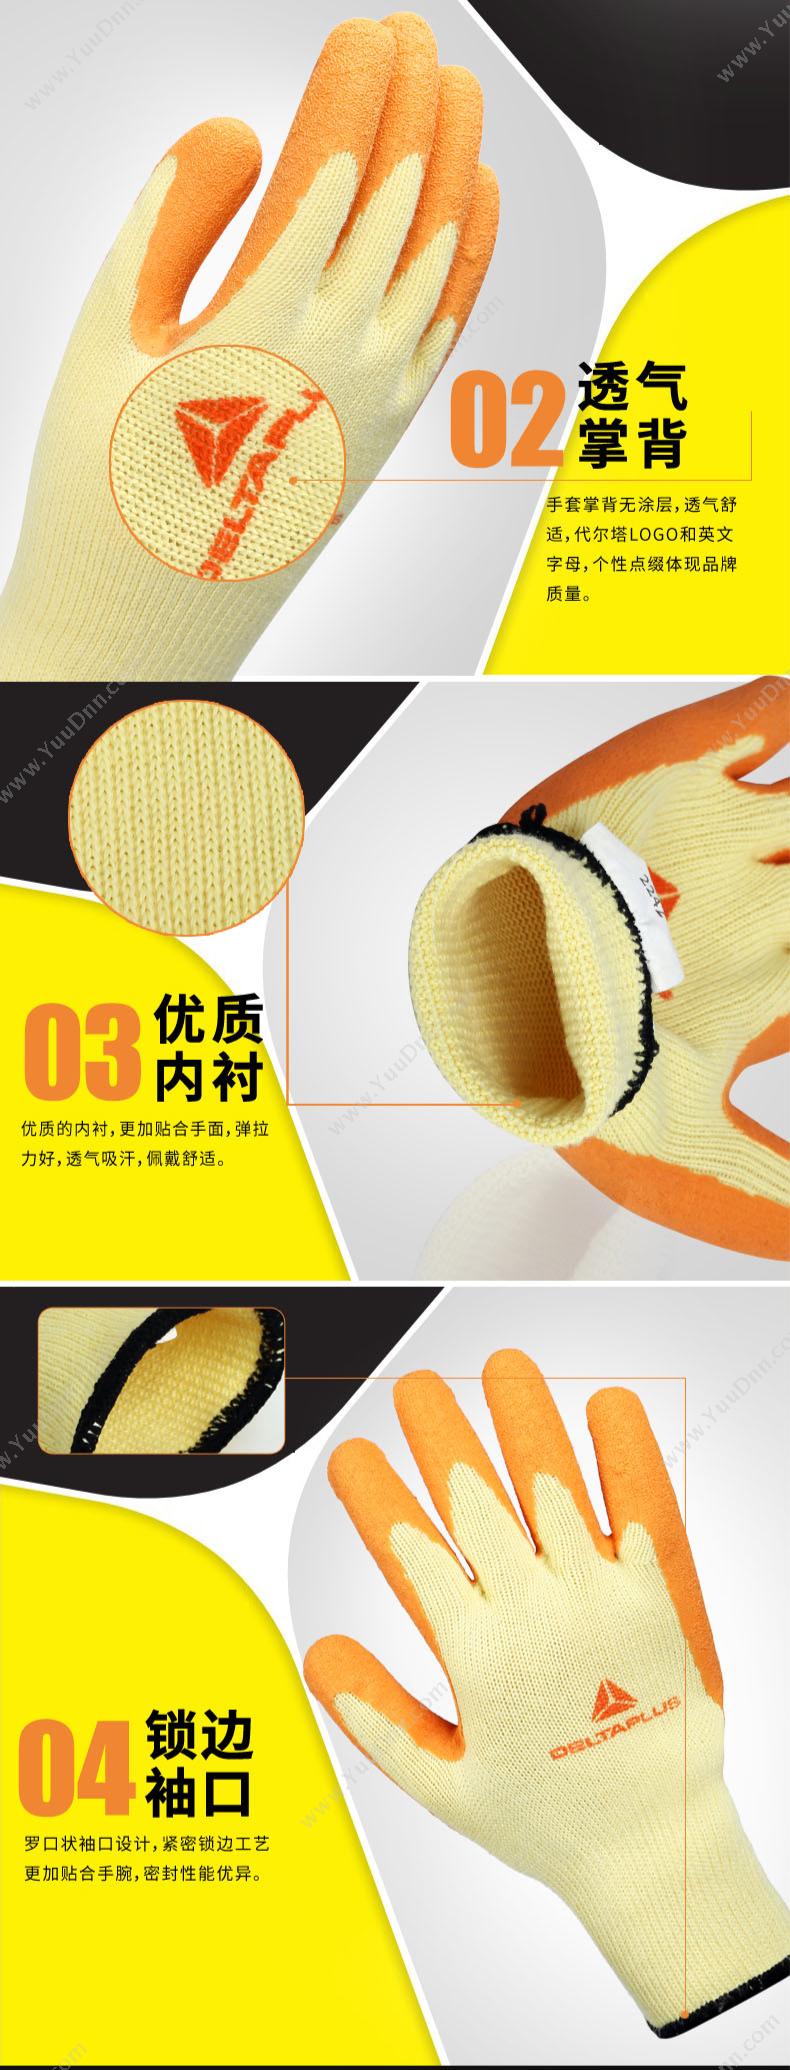 代尔塔 Delta VE730（201730） 通用乳胶涂层防护手套  金黄色  袋装 普通手套